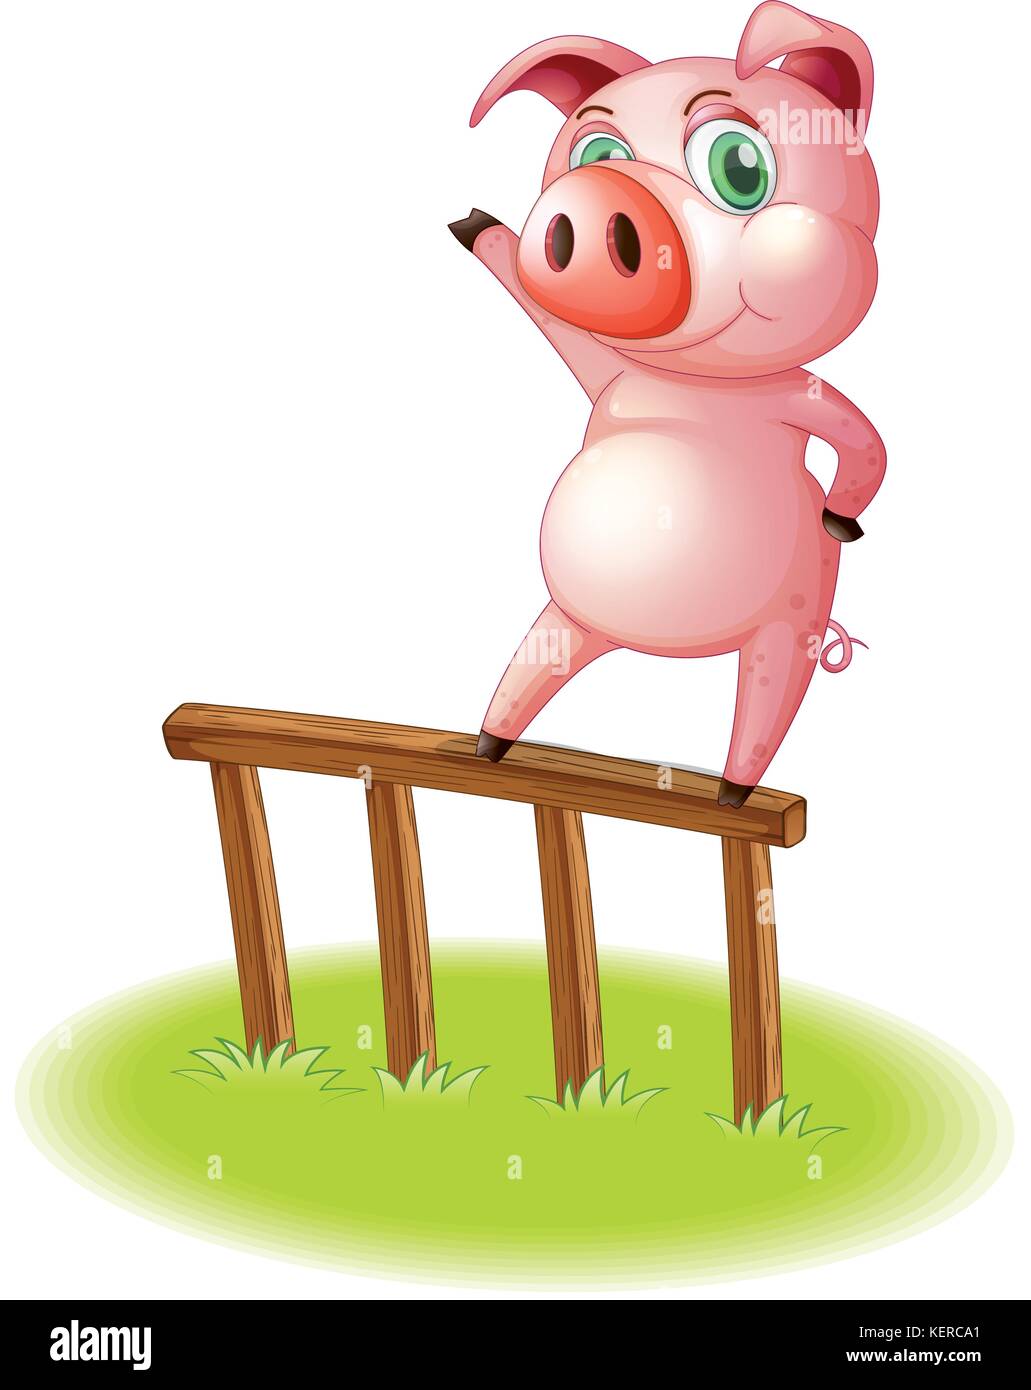 Illustrazione di un maiale in piedi sopra la recinzione di legno su sfondo bianco Illustrazione Vettoriale